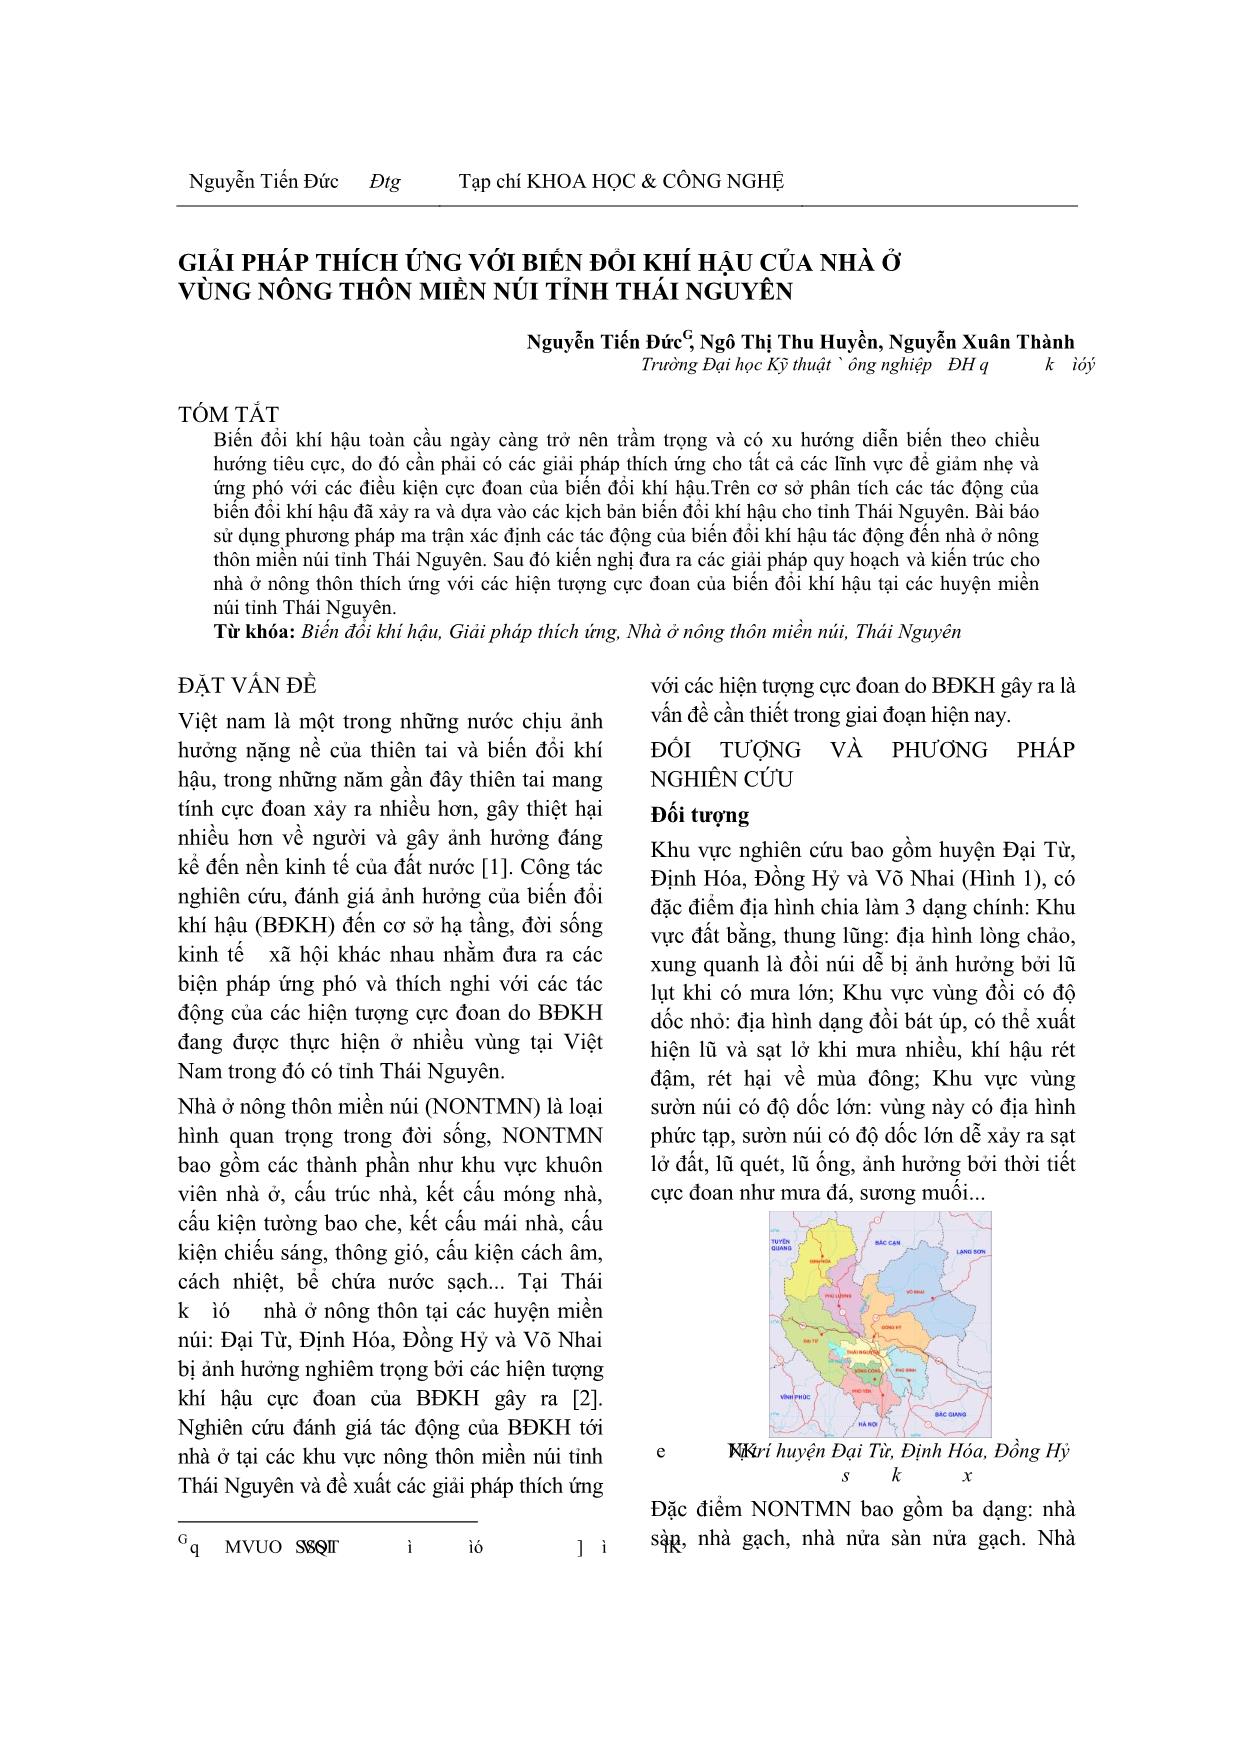 Giải pháp thích ứng với biến đổi khí hậu của nhà ở vùng nông thôn miền núi tỉnh Thái Nguyên trang 1